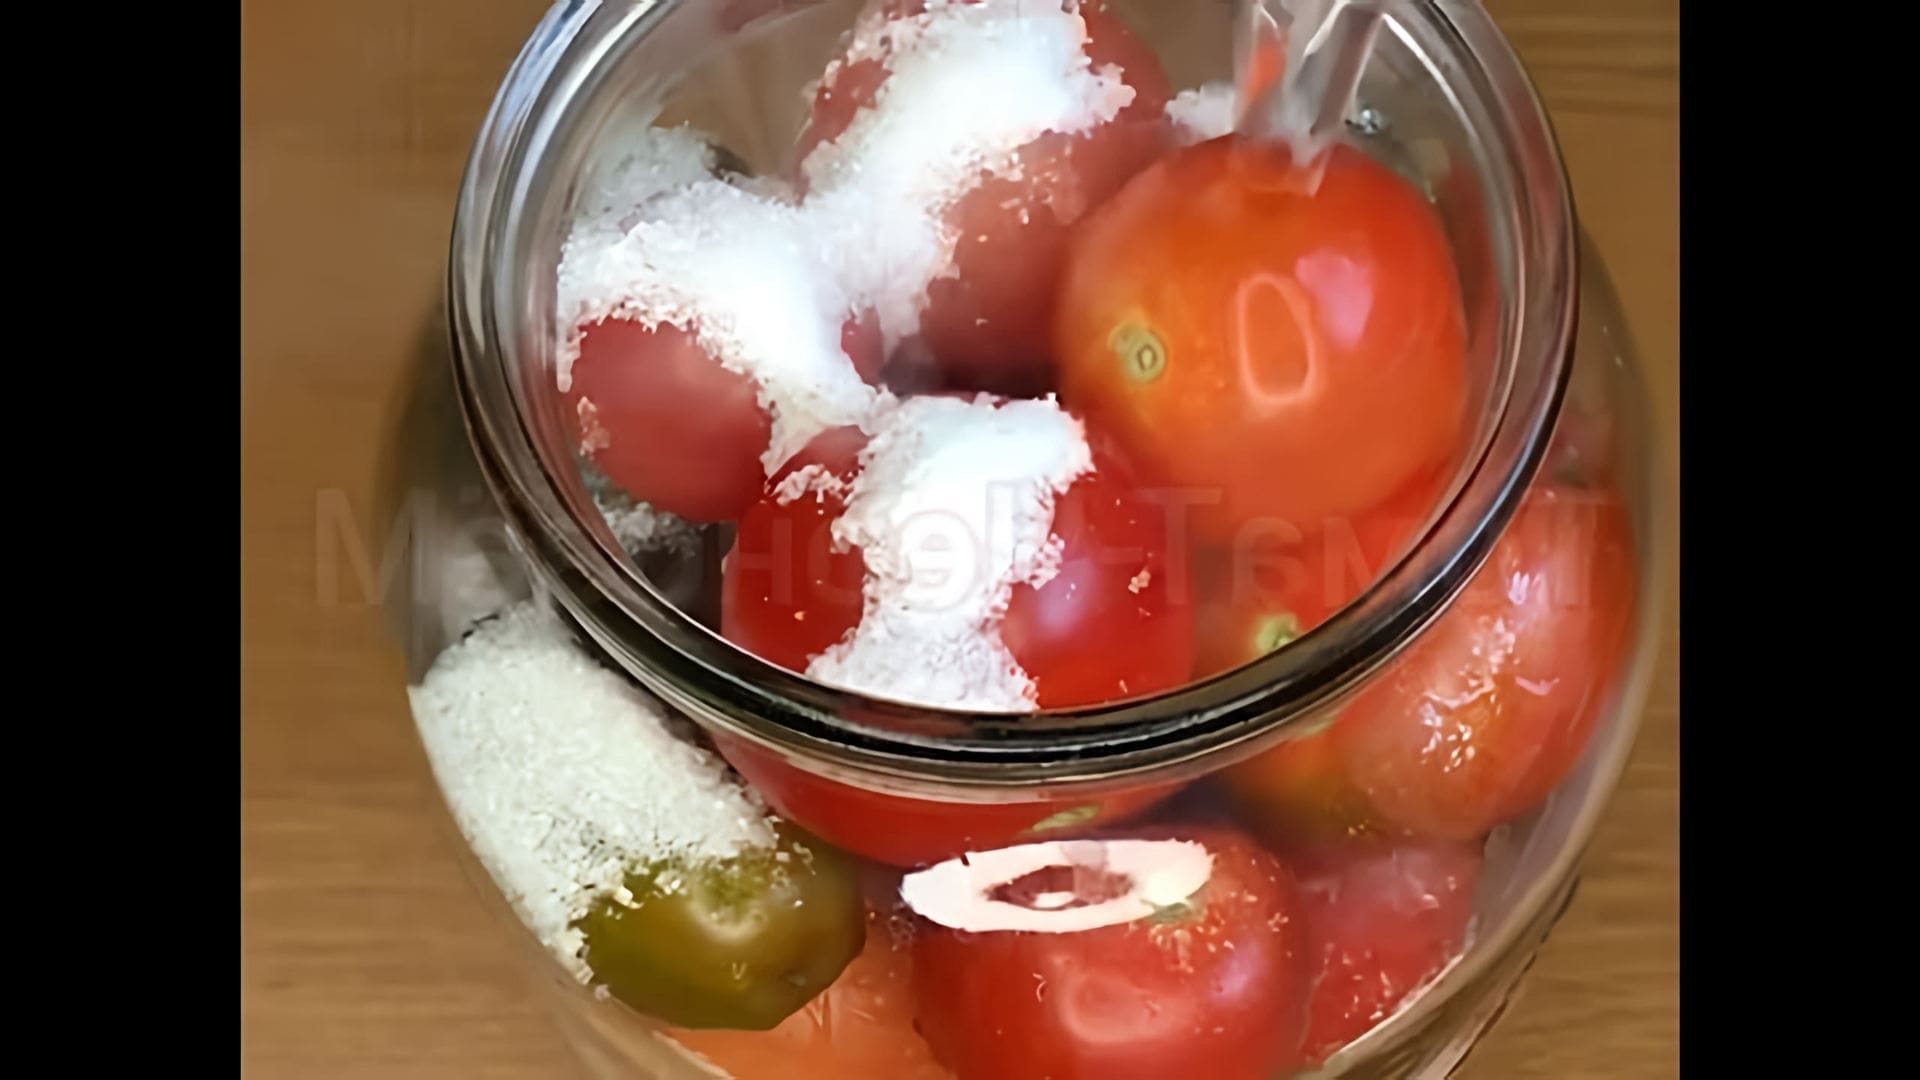 "Самый простой рецепт консервированных помидоров" - это видео-ролик, который демонстрирует процесс приготовления консервированных помидоров